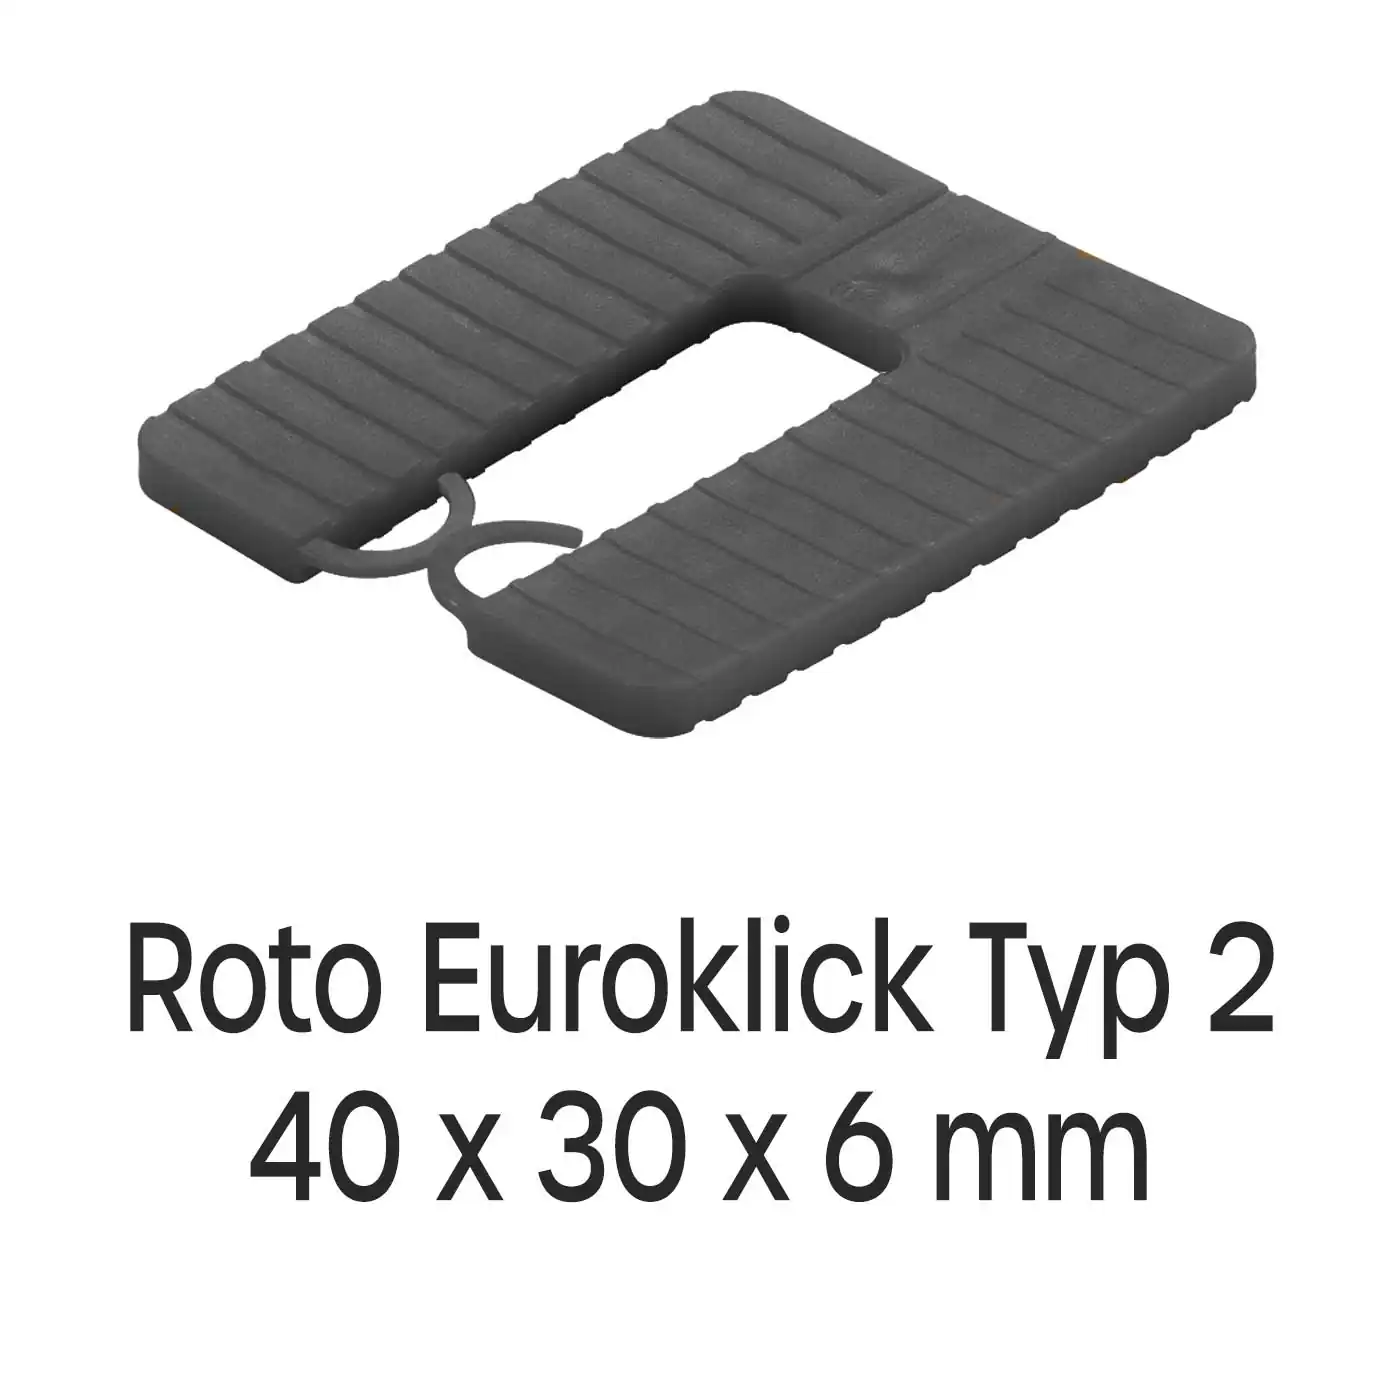 Distanzplatten Roto Euroklick Typ 2 40 x 30 x 6 mm 1000 Stück